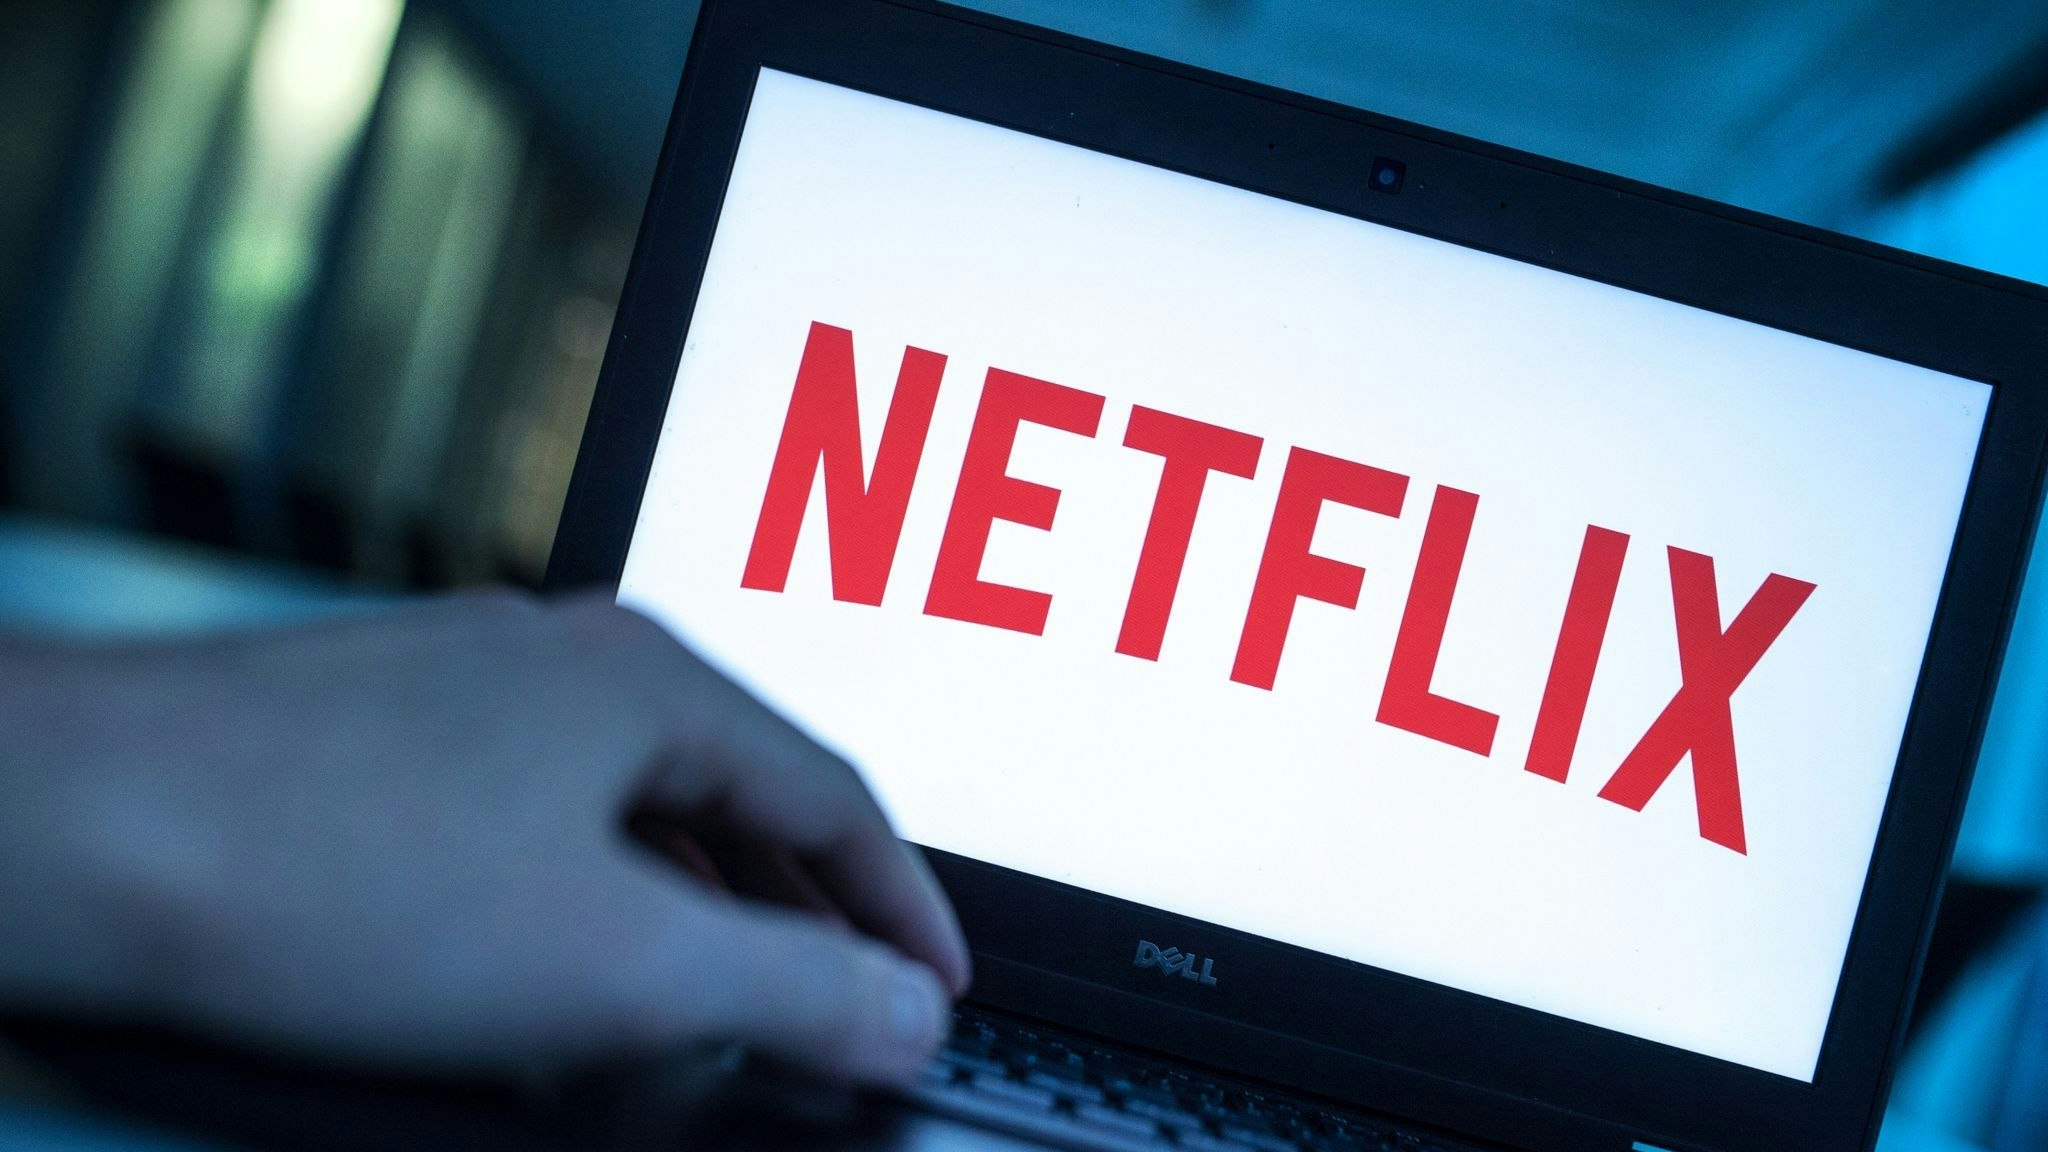 Netflix verlor im ersten Halbjahr 2022 mehr als eine Million Kunden. Foto: dpa/Heinl